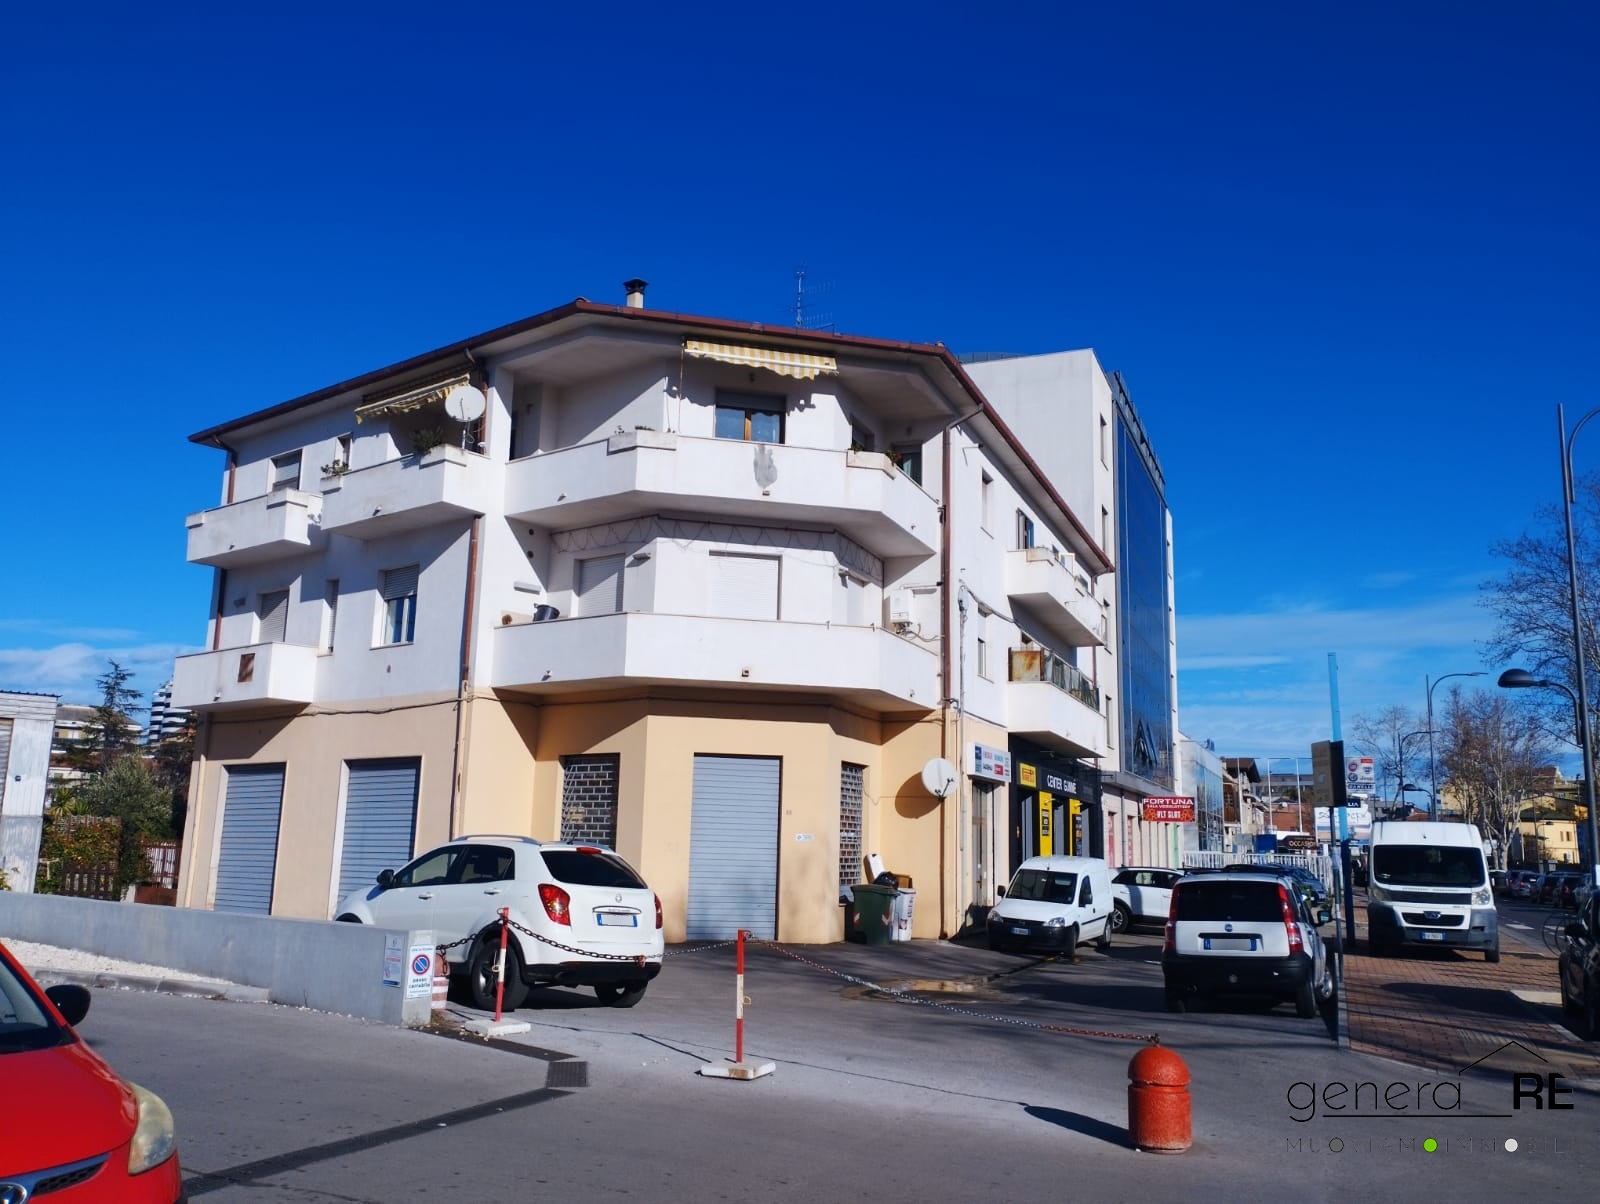 Appartamento in vendita a Pescara, 4 locali, prezzo € 110.000 | PortaleAgenzieImmobiliari.it